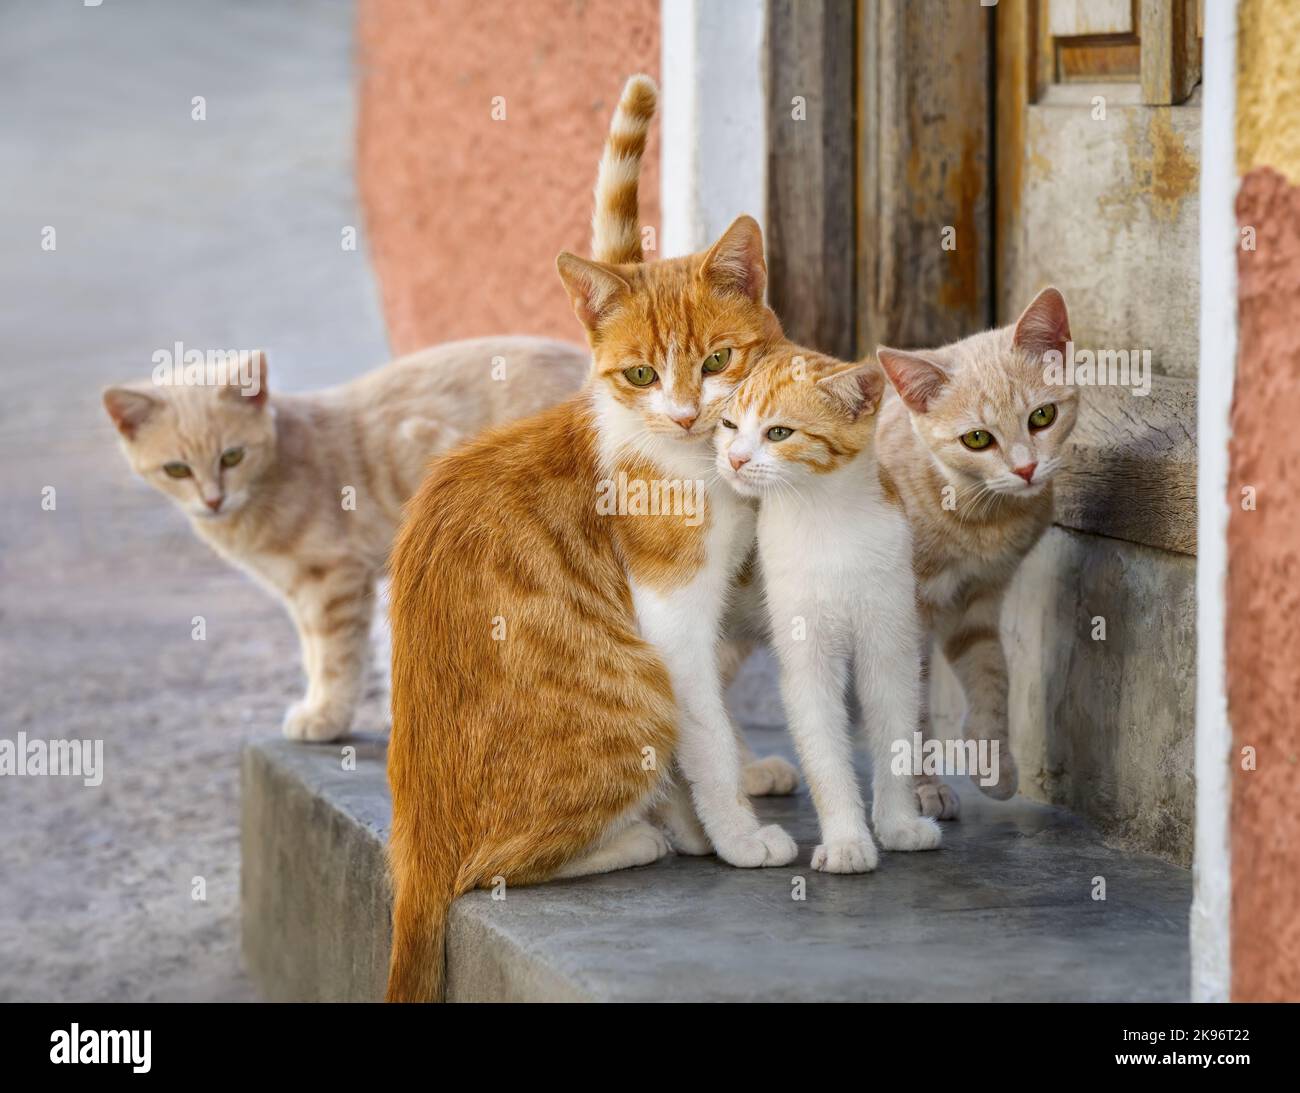 Nette Katzenfamilie, die vor einer Haustüre posiert, liebliche Katzen, die sich gegenseitig den Kopf reiben, Griechenland, Europa Stockfoto